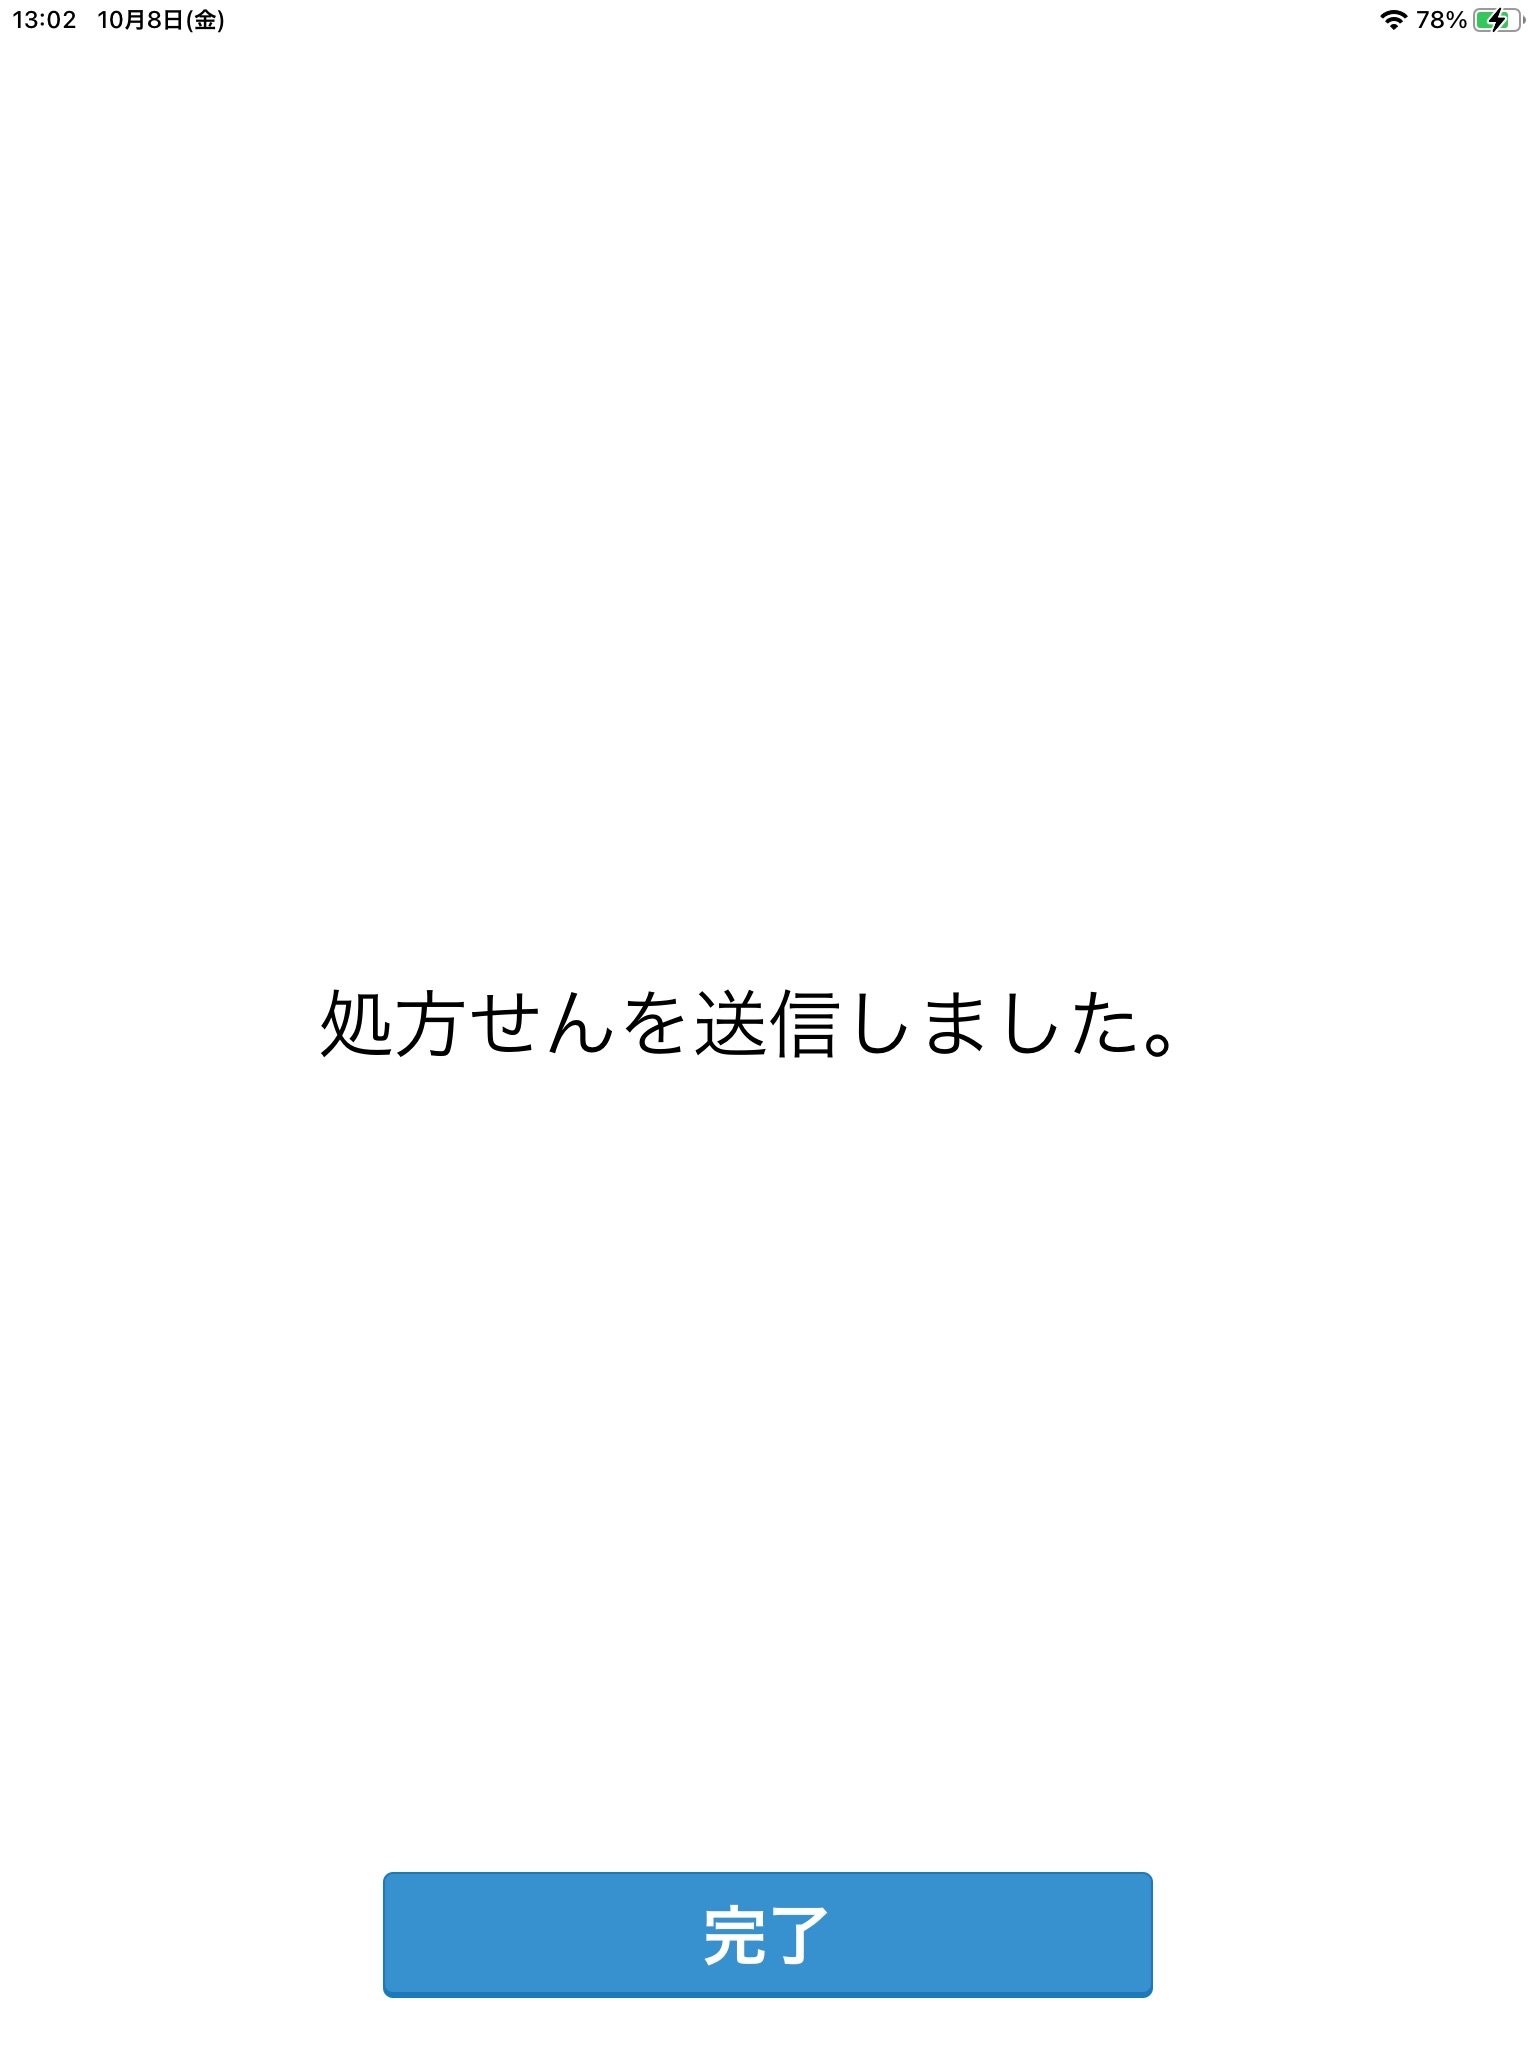 スマホよ薬® - 薬局版 screenshot 4